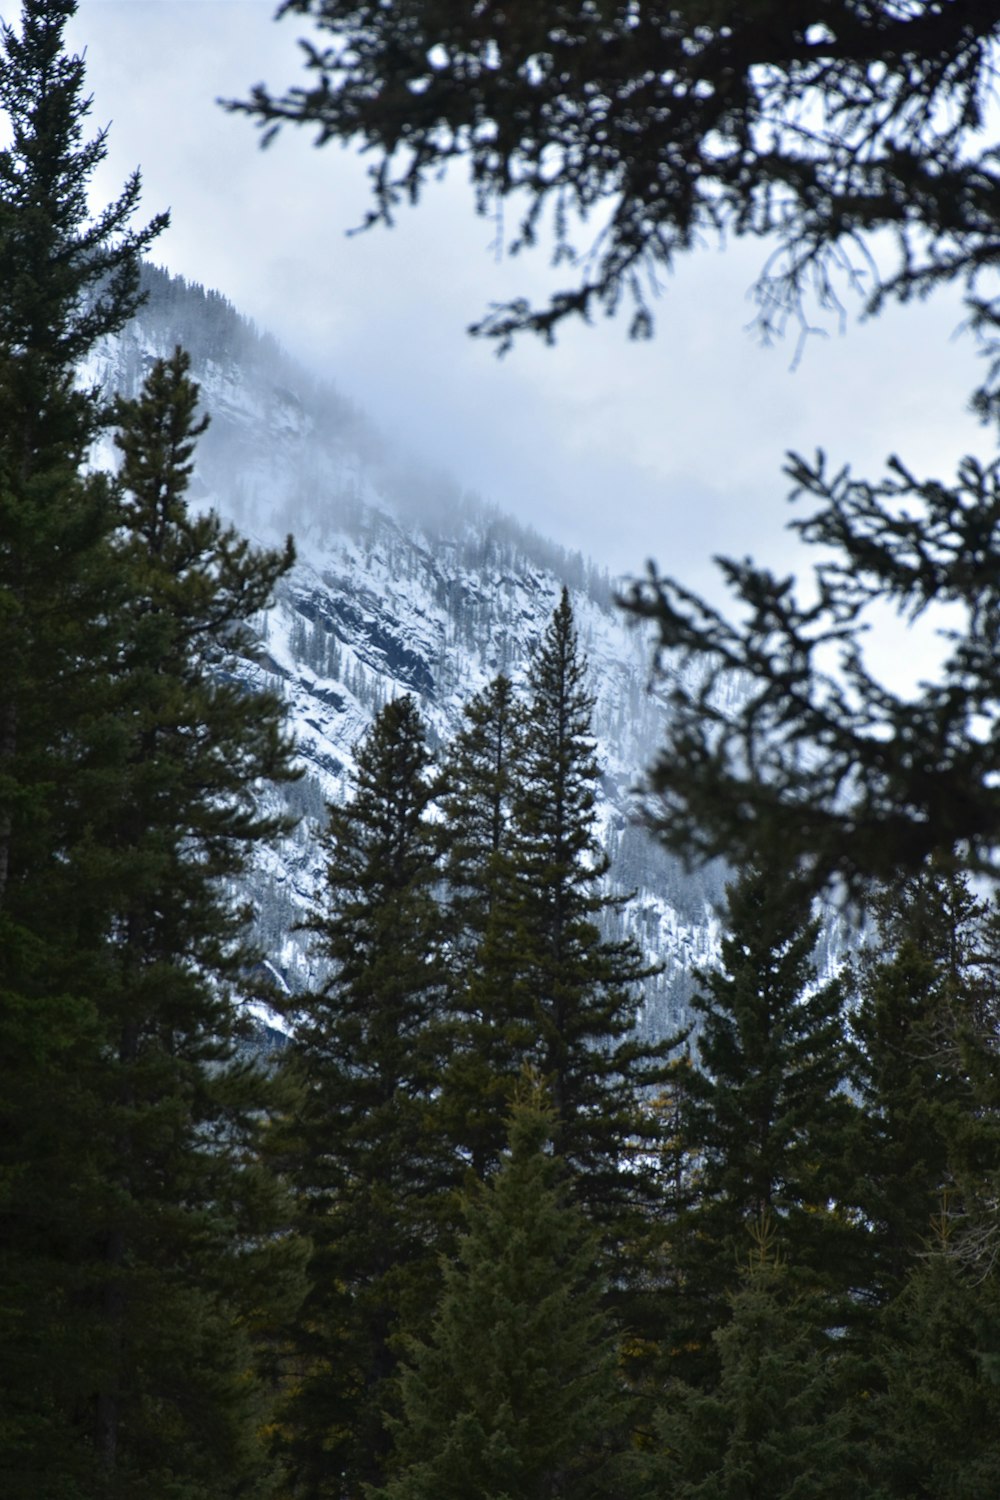 Tagsüber Kiefern in der Nähe eines schneebedeckten Berges